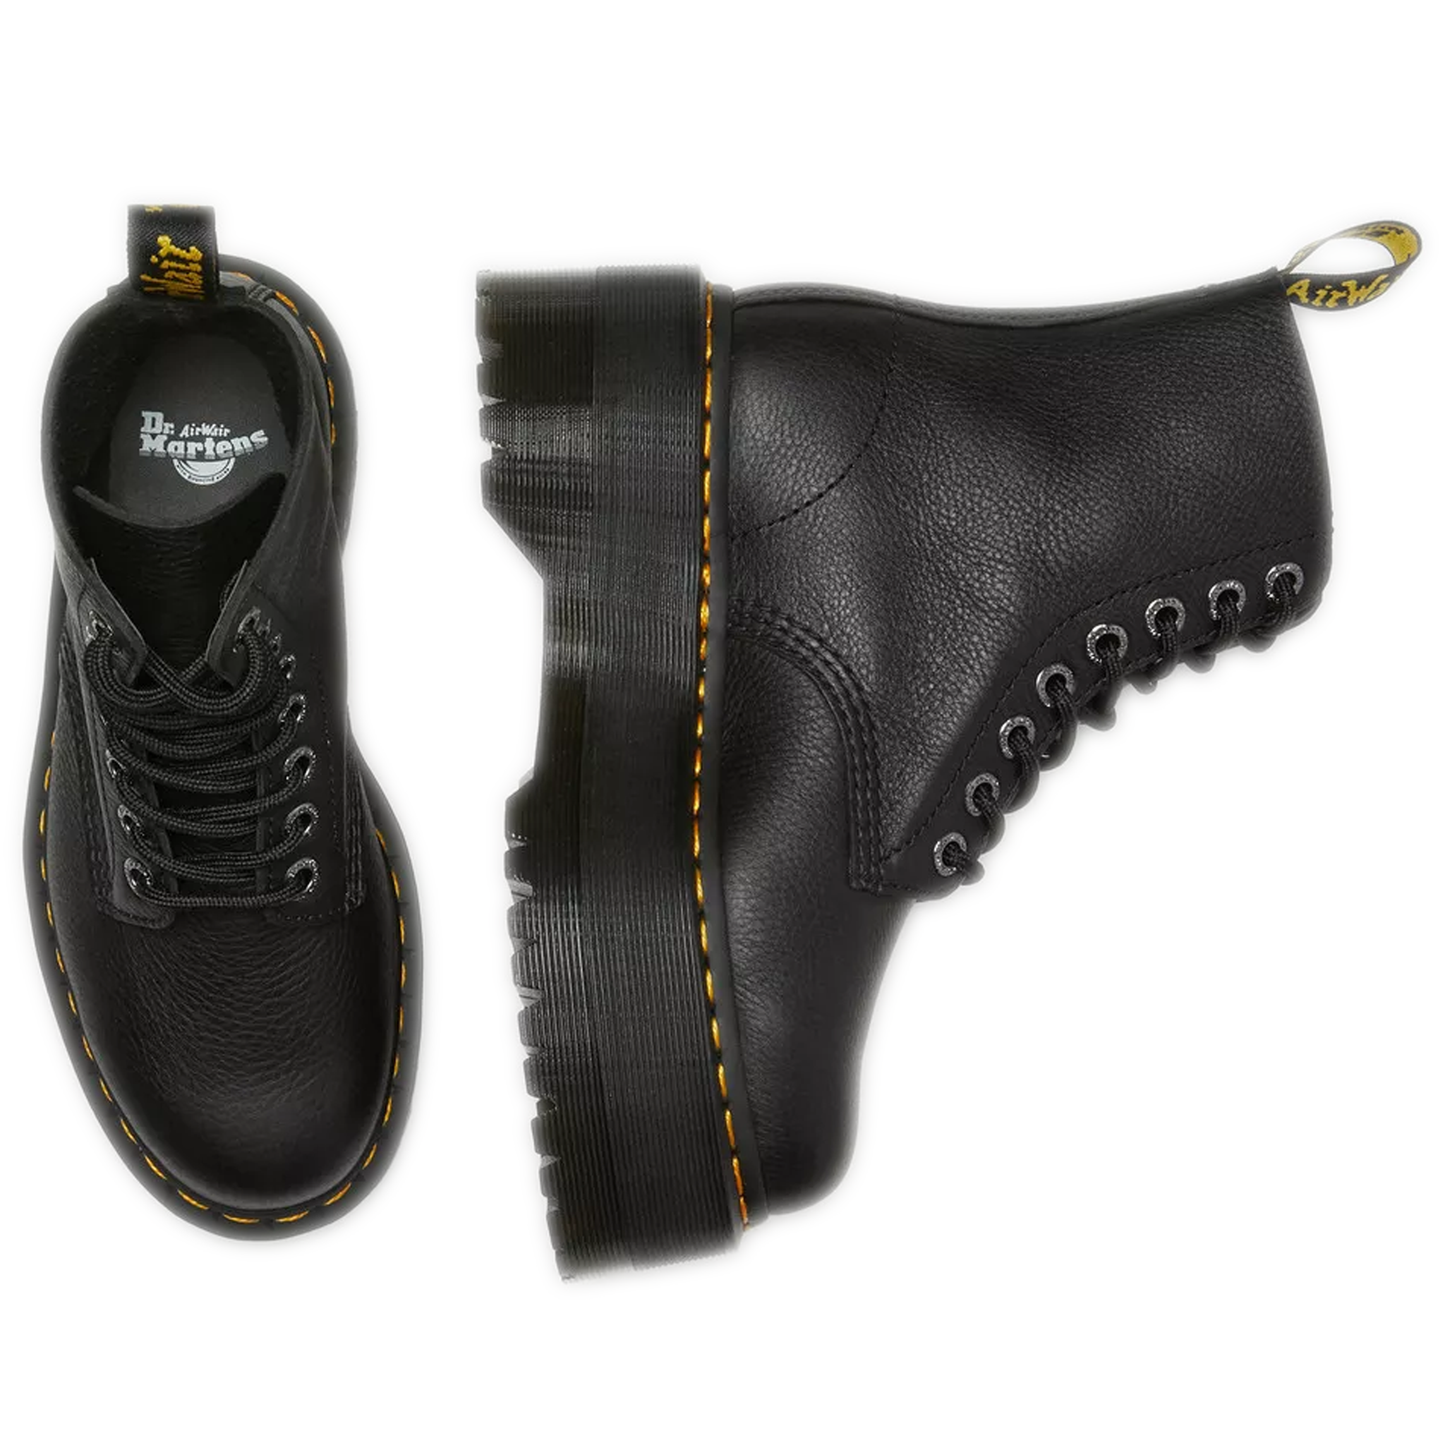 Women's Dr. Martens 1460 Pascal Max Leather Platform Boots - Black Pisa